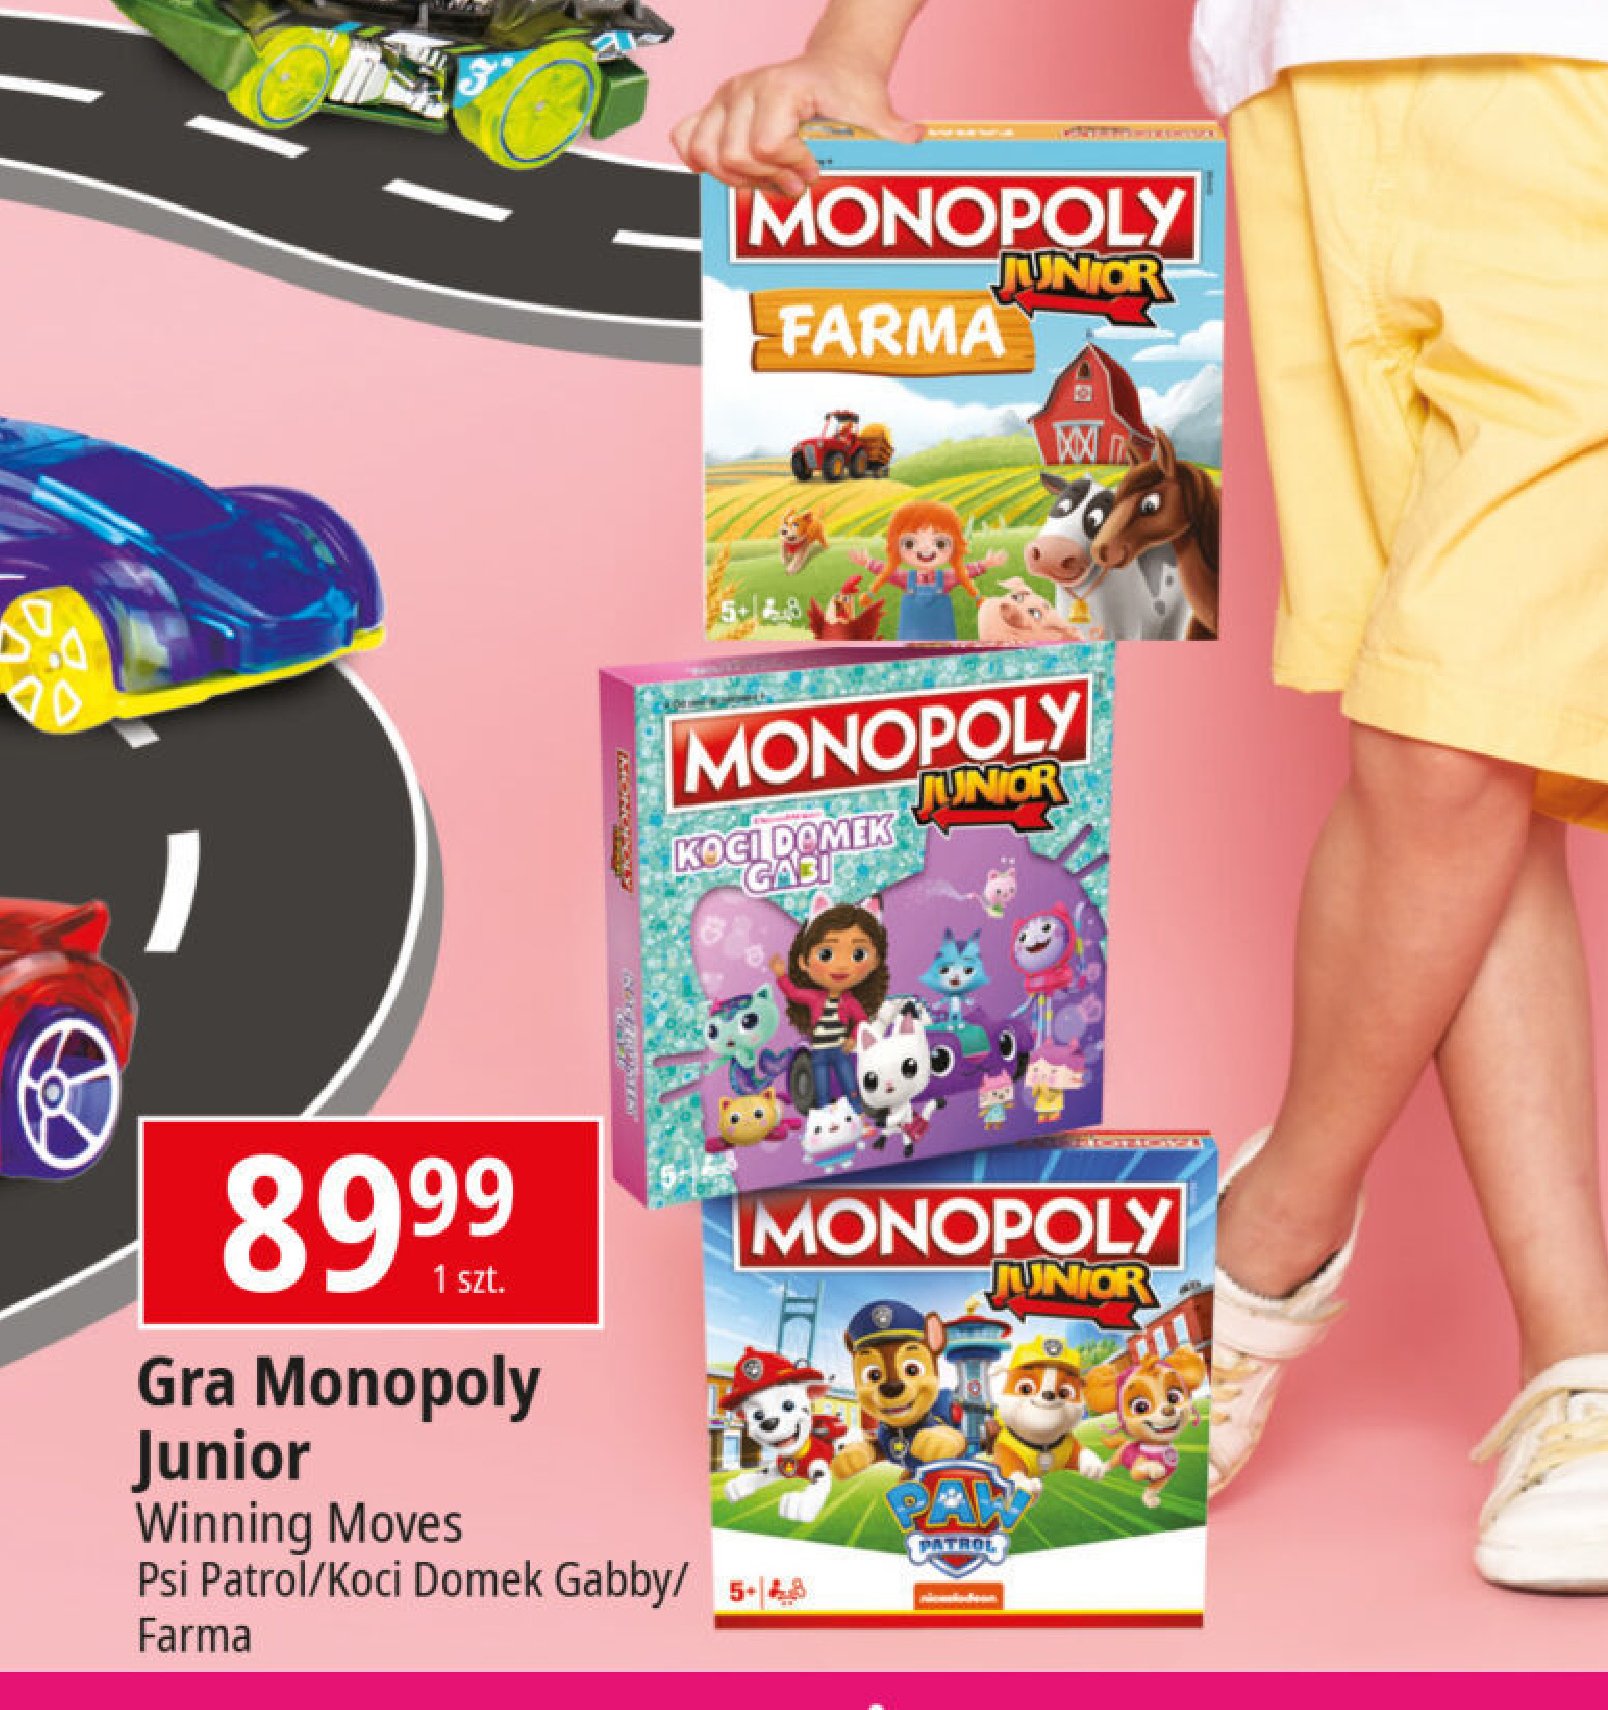 Gra monopoly junior koci domek gabi Hasbro promocja